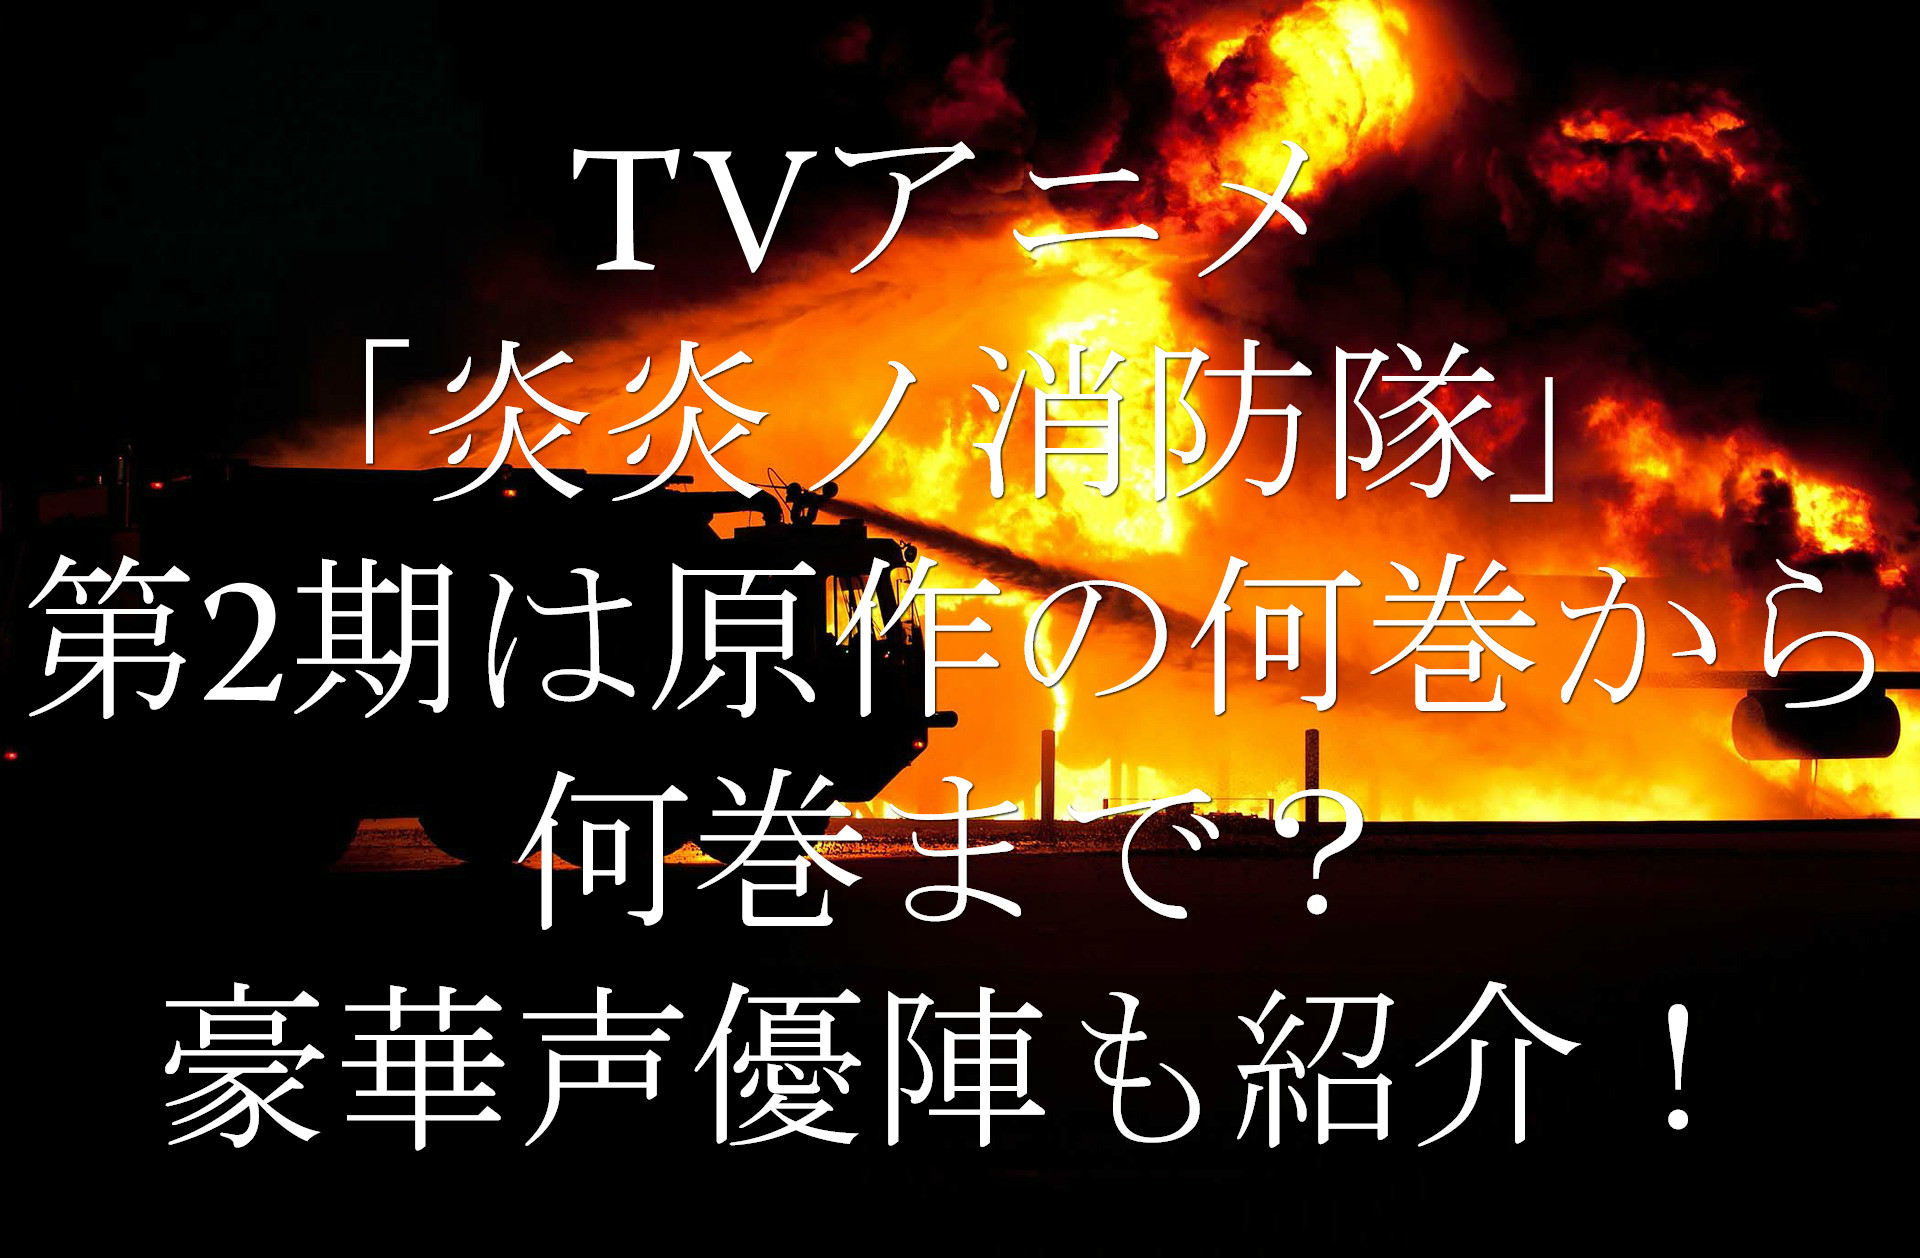 Tvアニメ 炎炎ノ消防隊 第2期はどこまで 原作の何巻から何巻まで 豪華声優陣も紹介